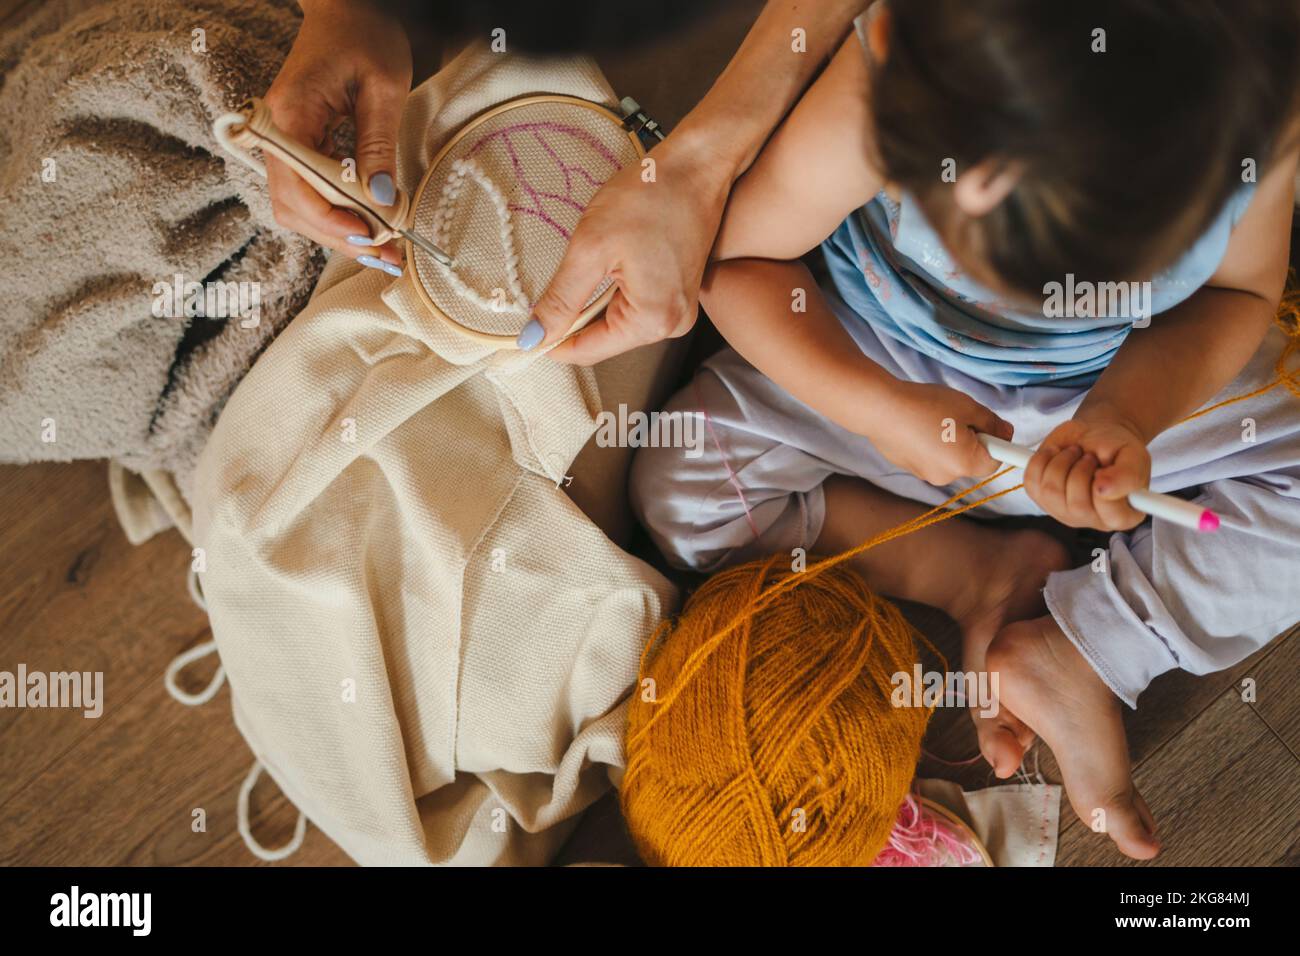 Vue de dessus d'une mère et d'une petite fille de bébé assis sur le sol dans le salon tricoter avec les aiguilles ensemble. Activité familiale à la maison. Personnes Banque D'Images